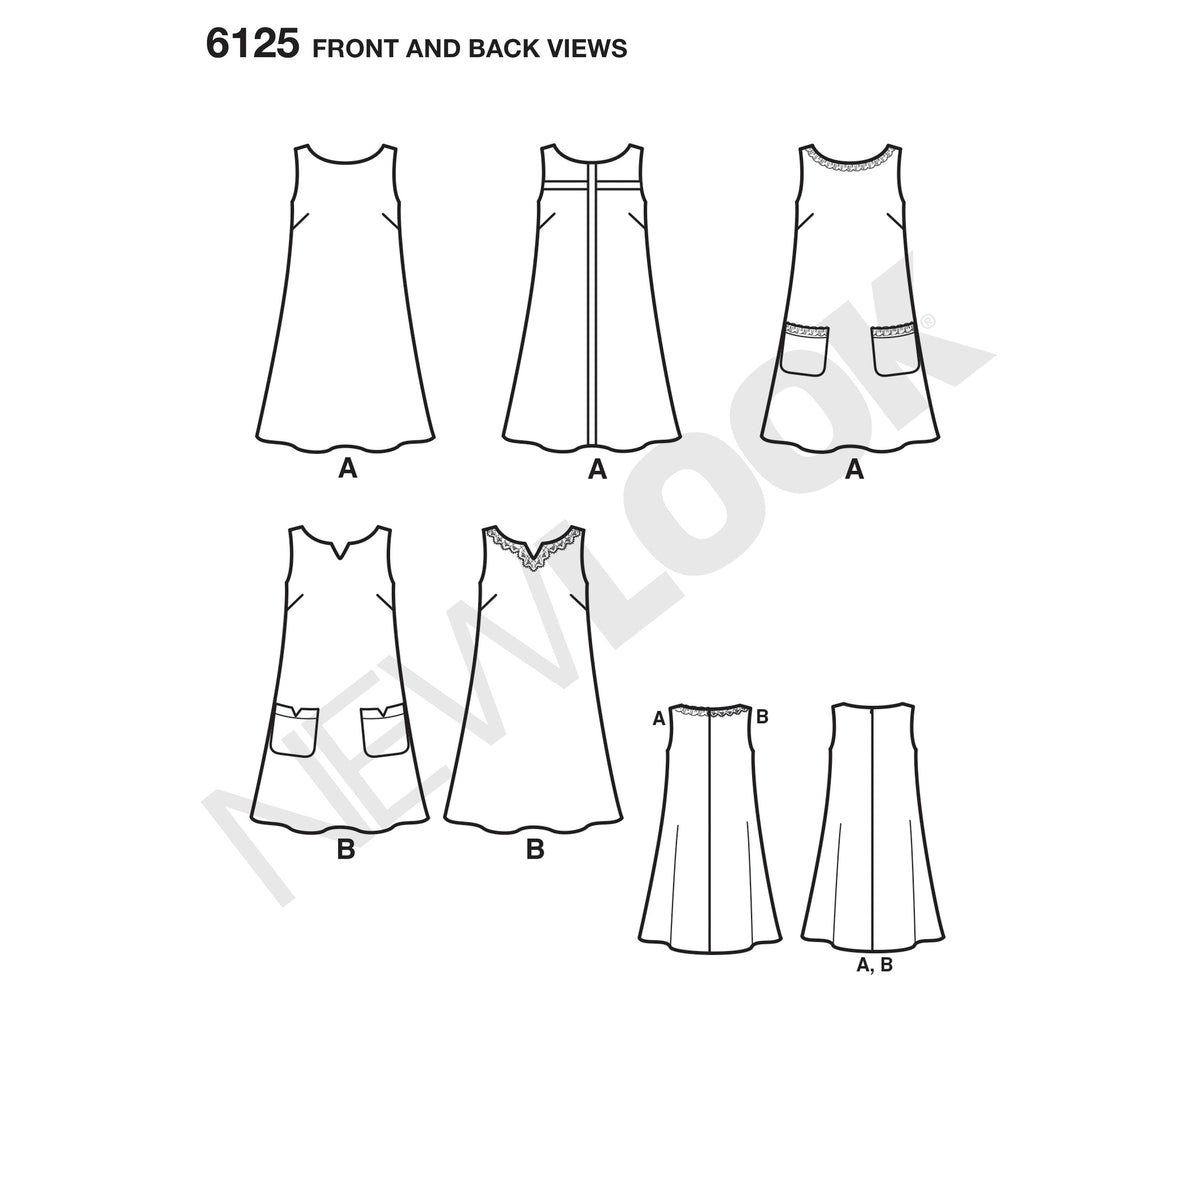 New Look Sewing Pattern 6125 - Pound Fabrics